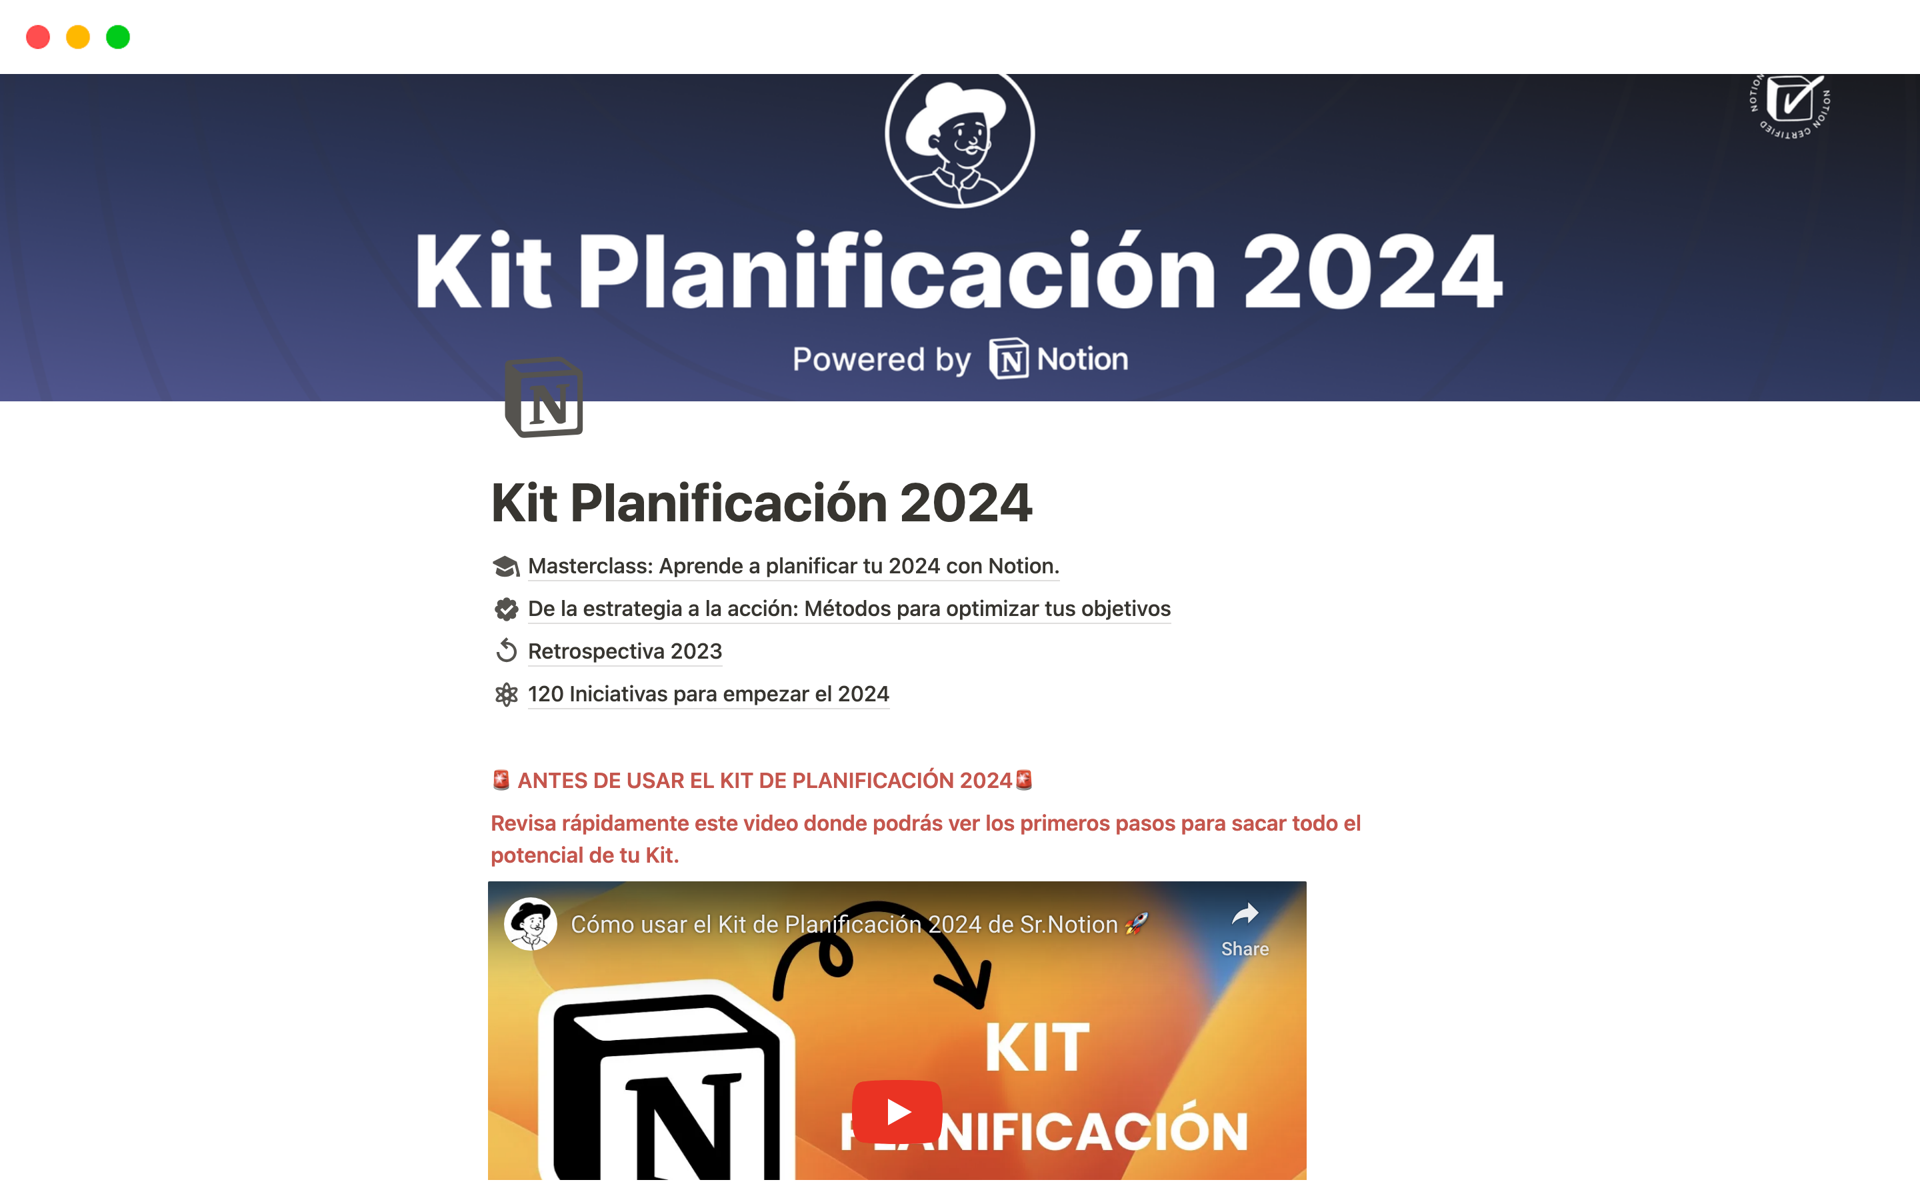 Vista previa de una plantilla para Kit Planificación 2024